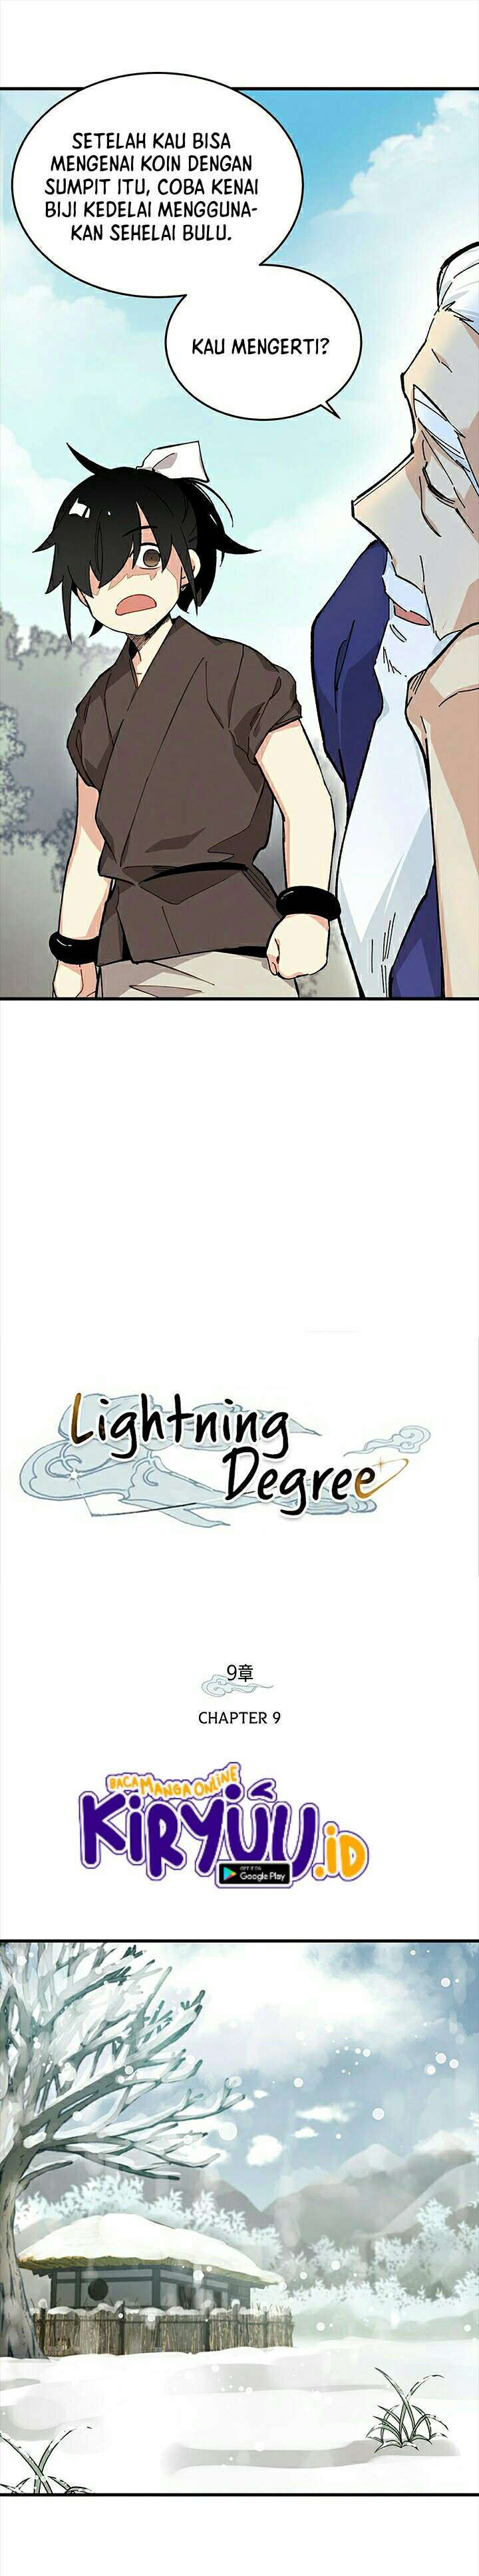 Lightning Degree Chapter 9